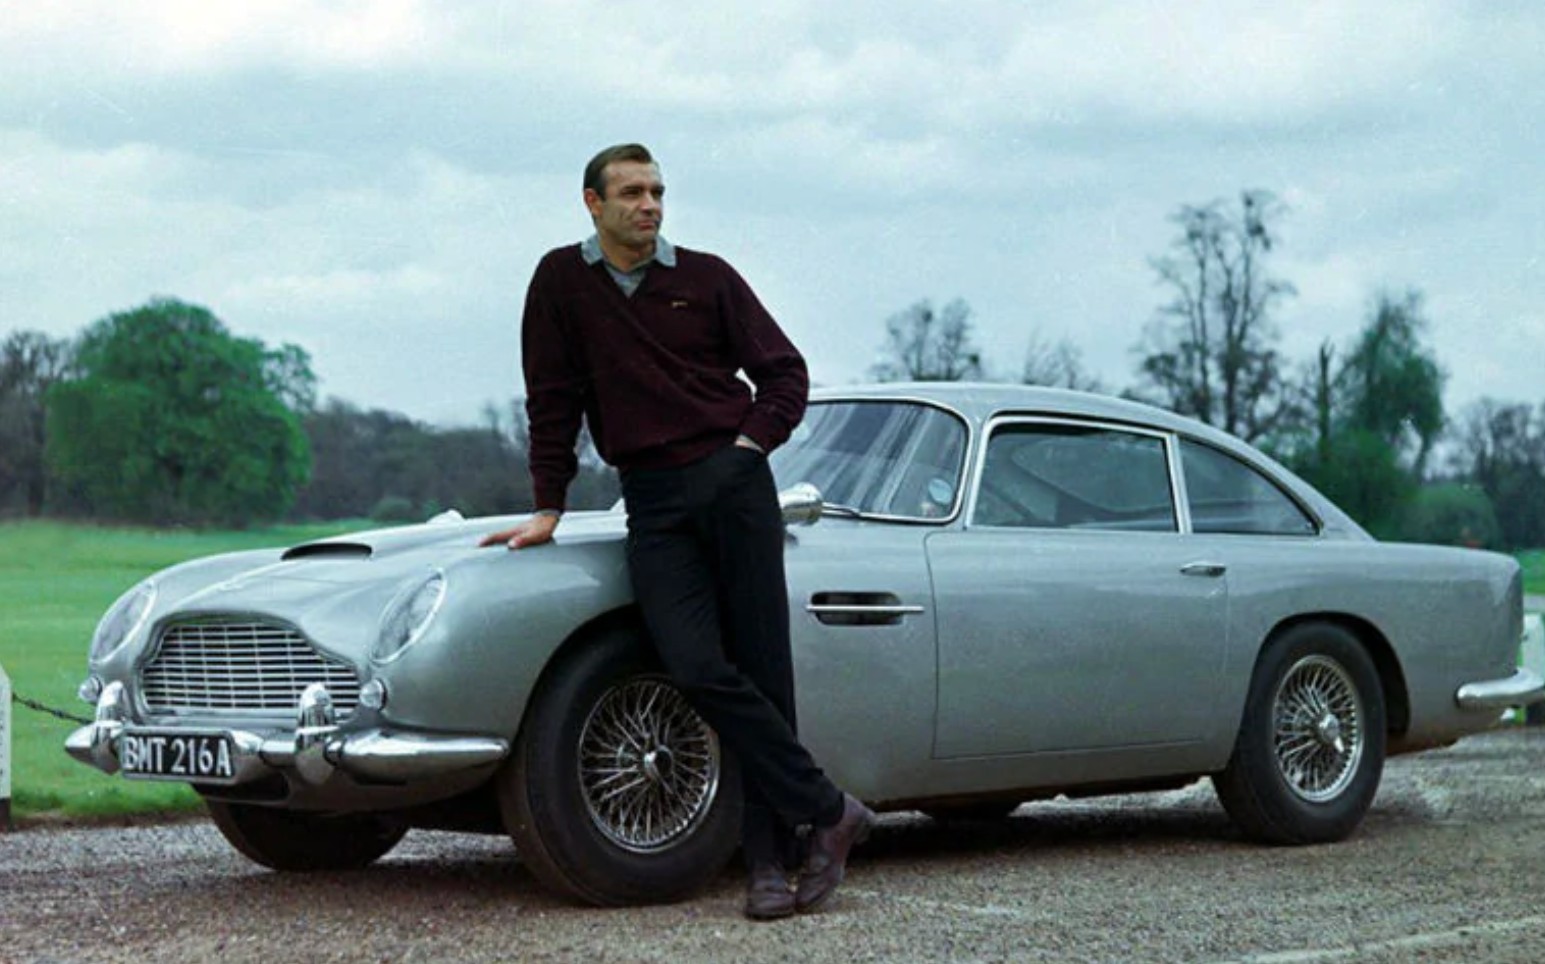 Sean Connery as 007 leans against his Aston Martin DB5